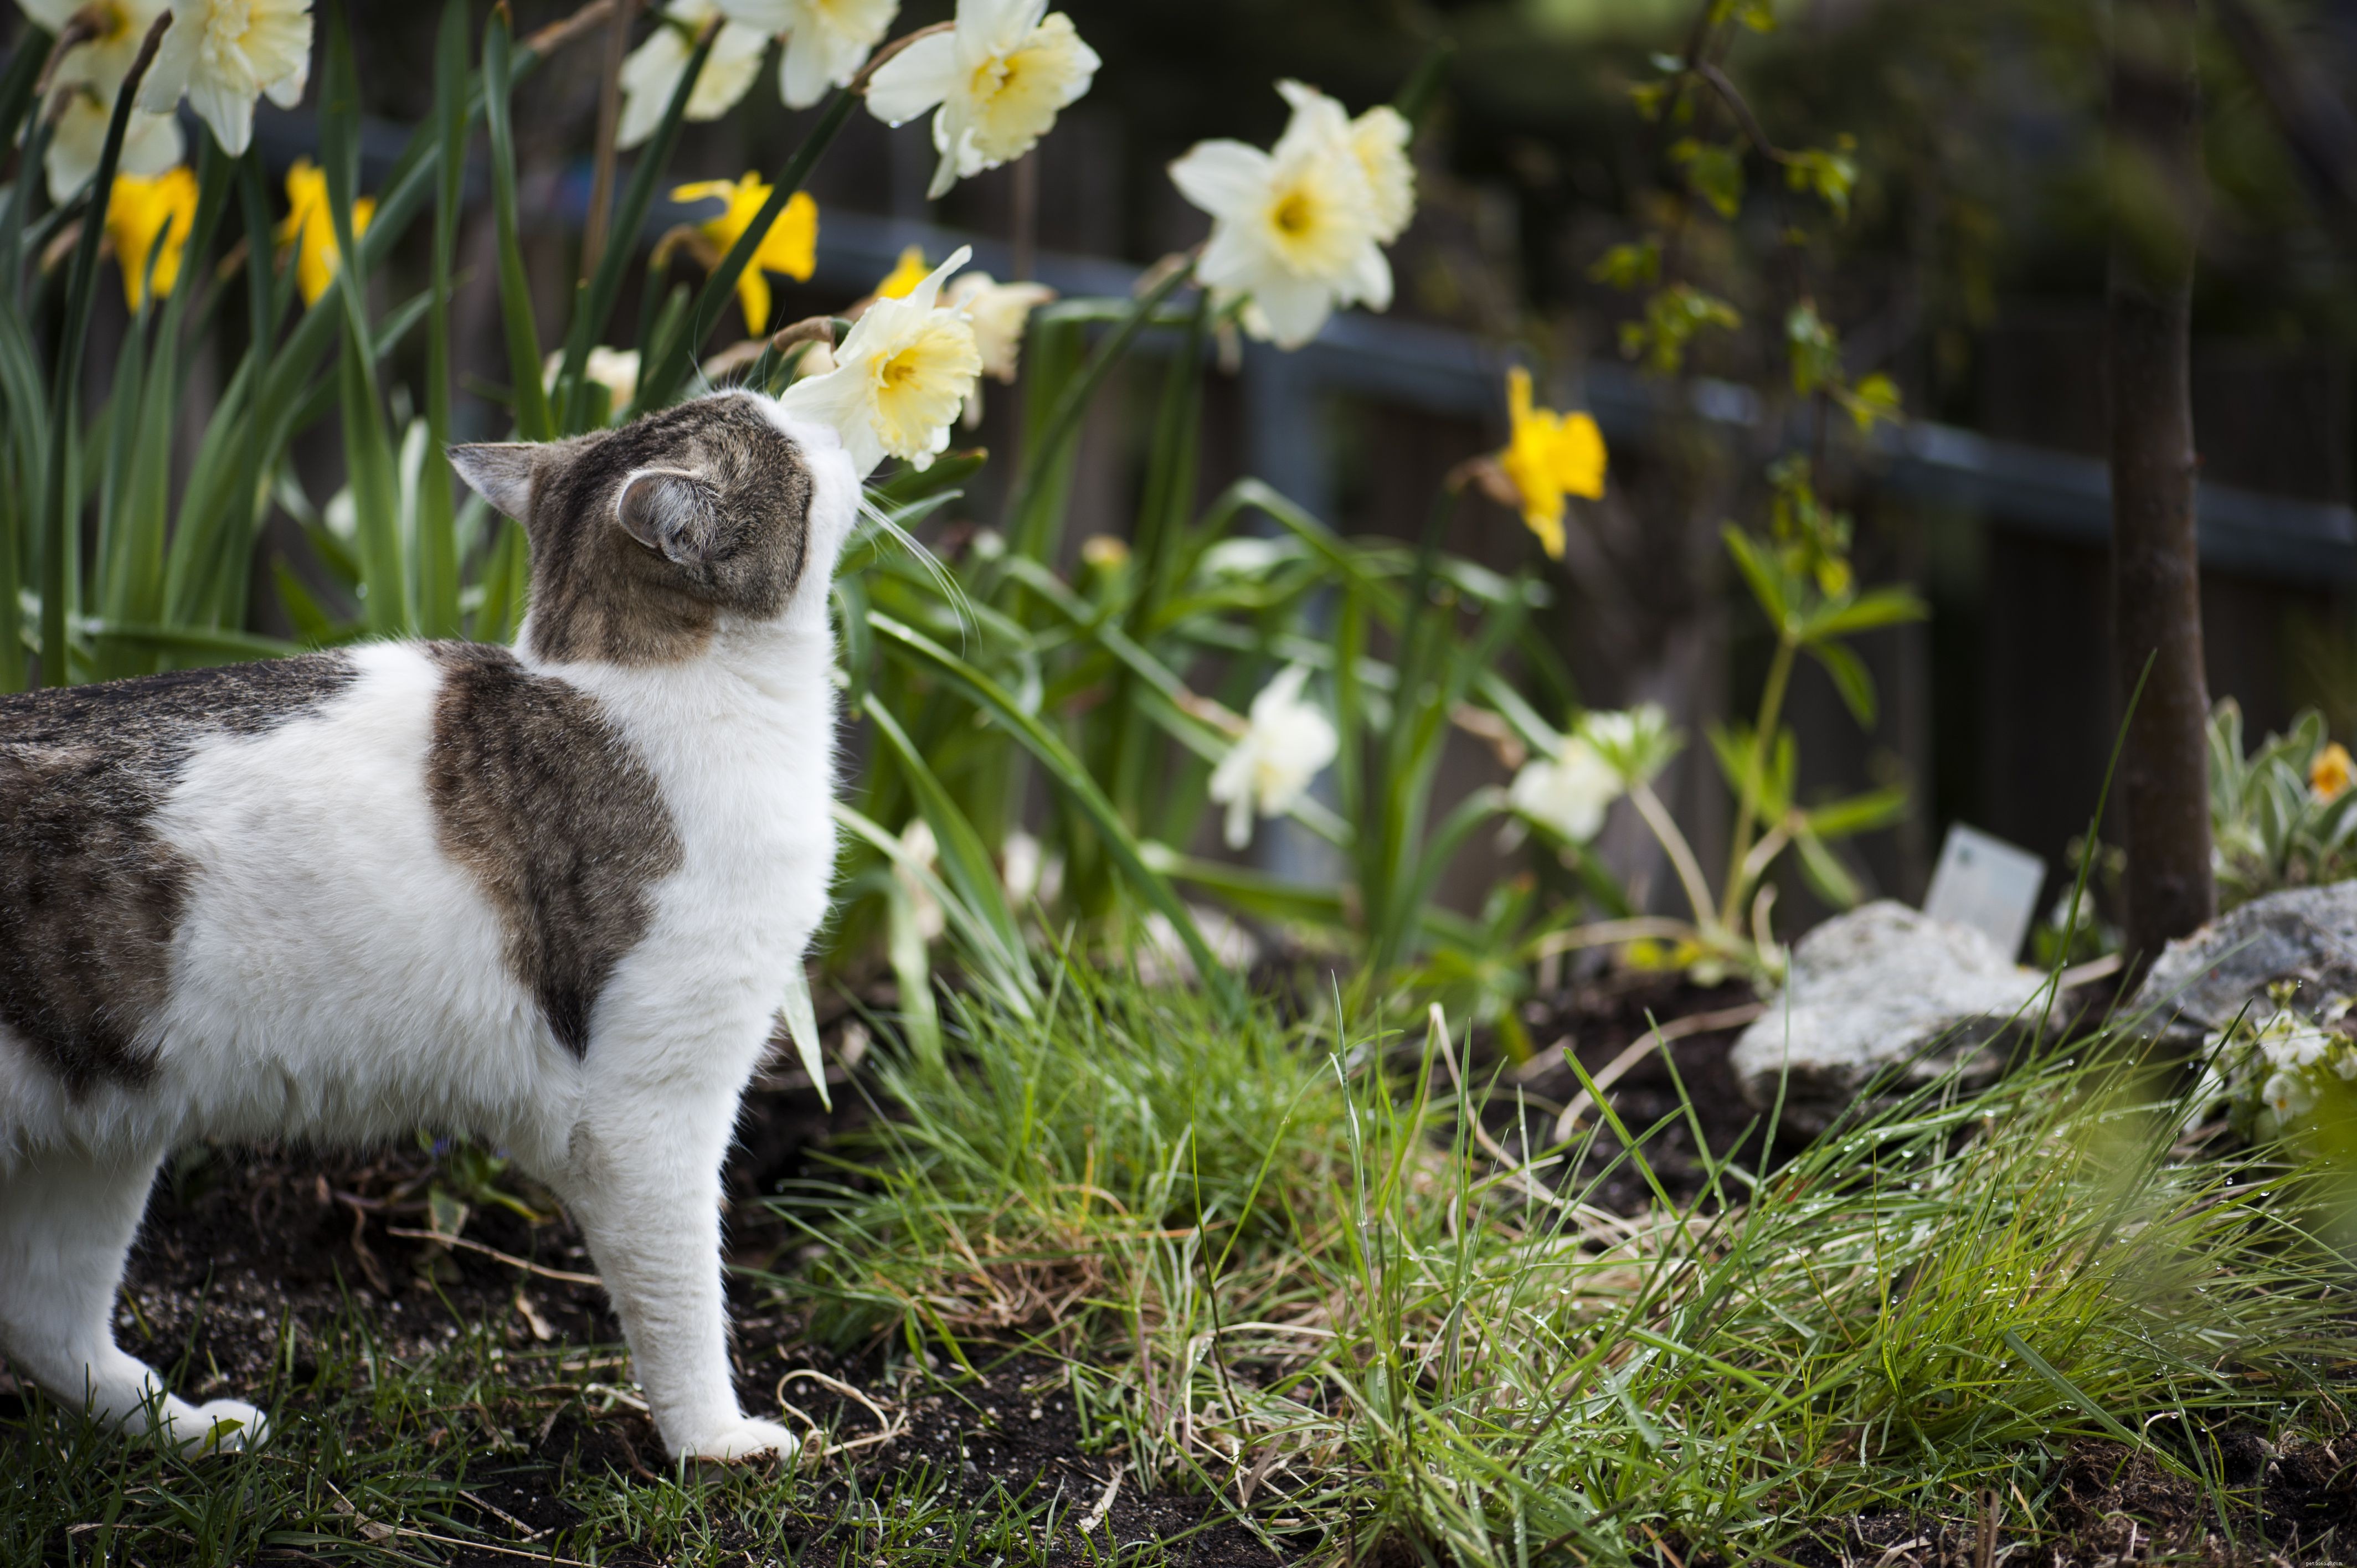 Обычные садовые растения, токсичные для кошек